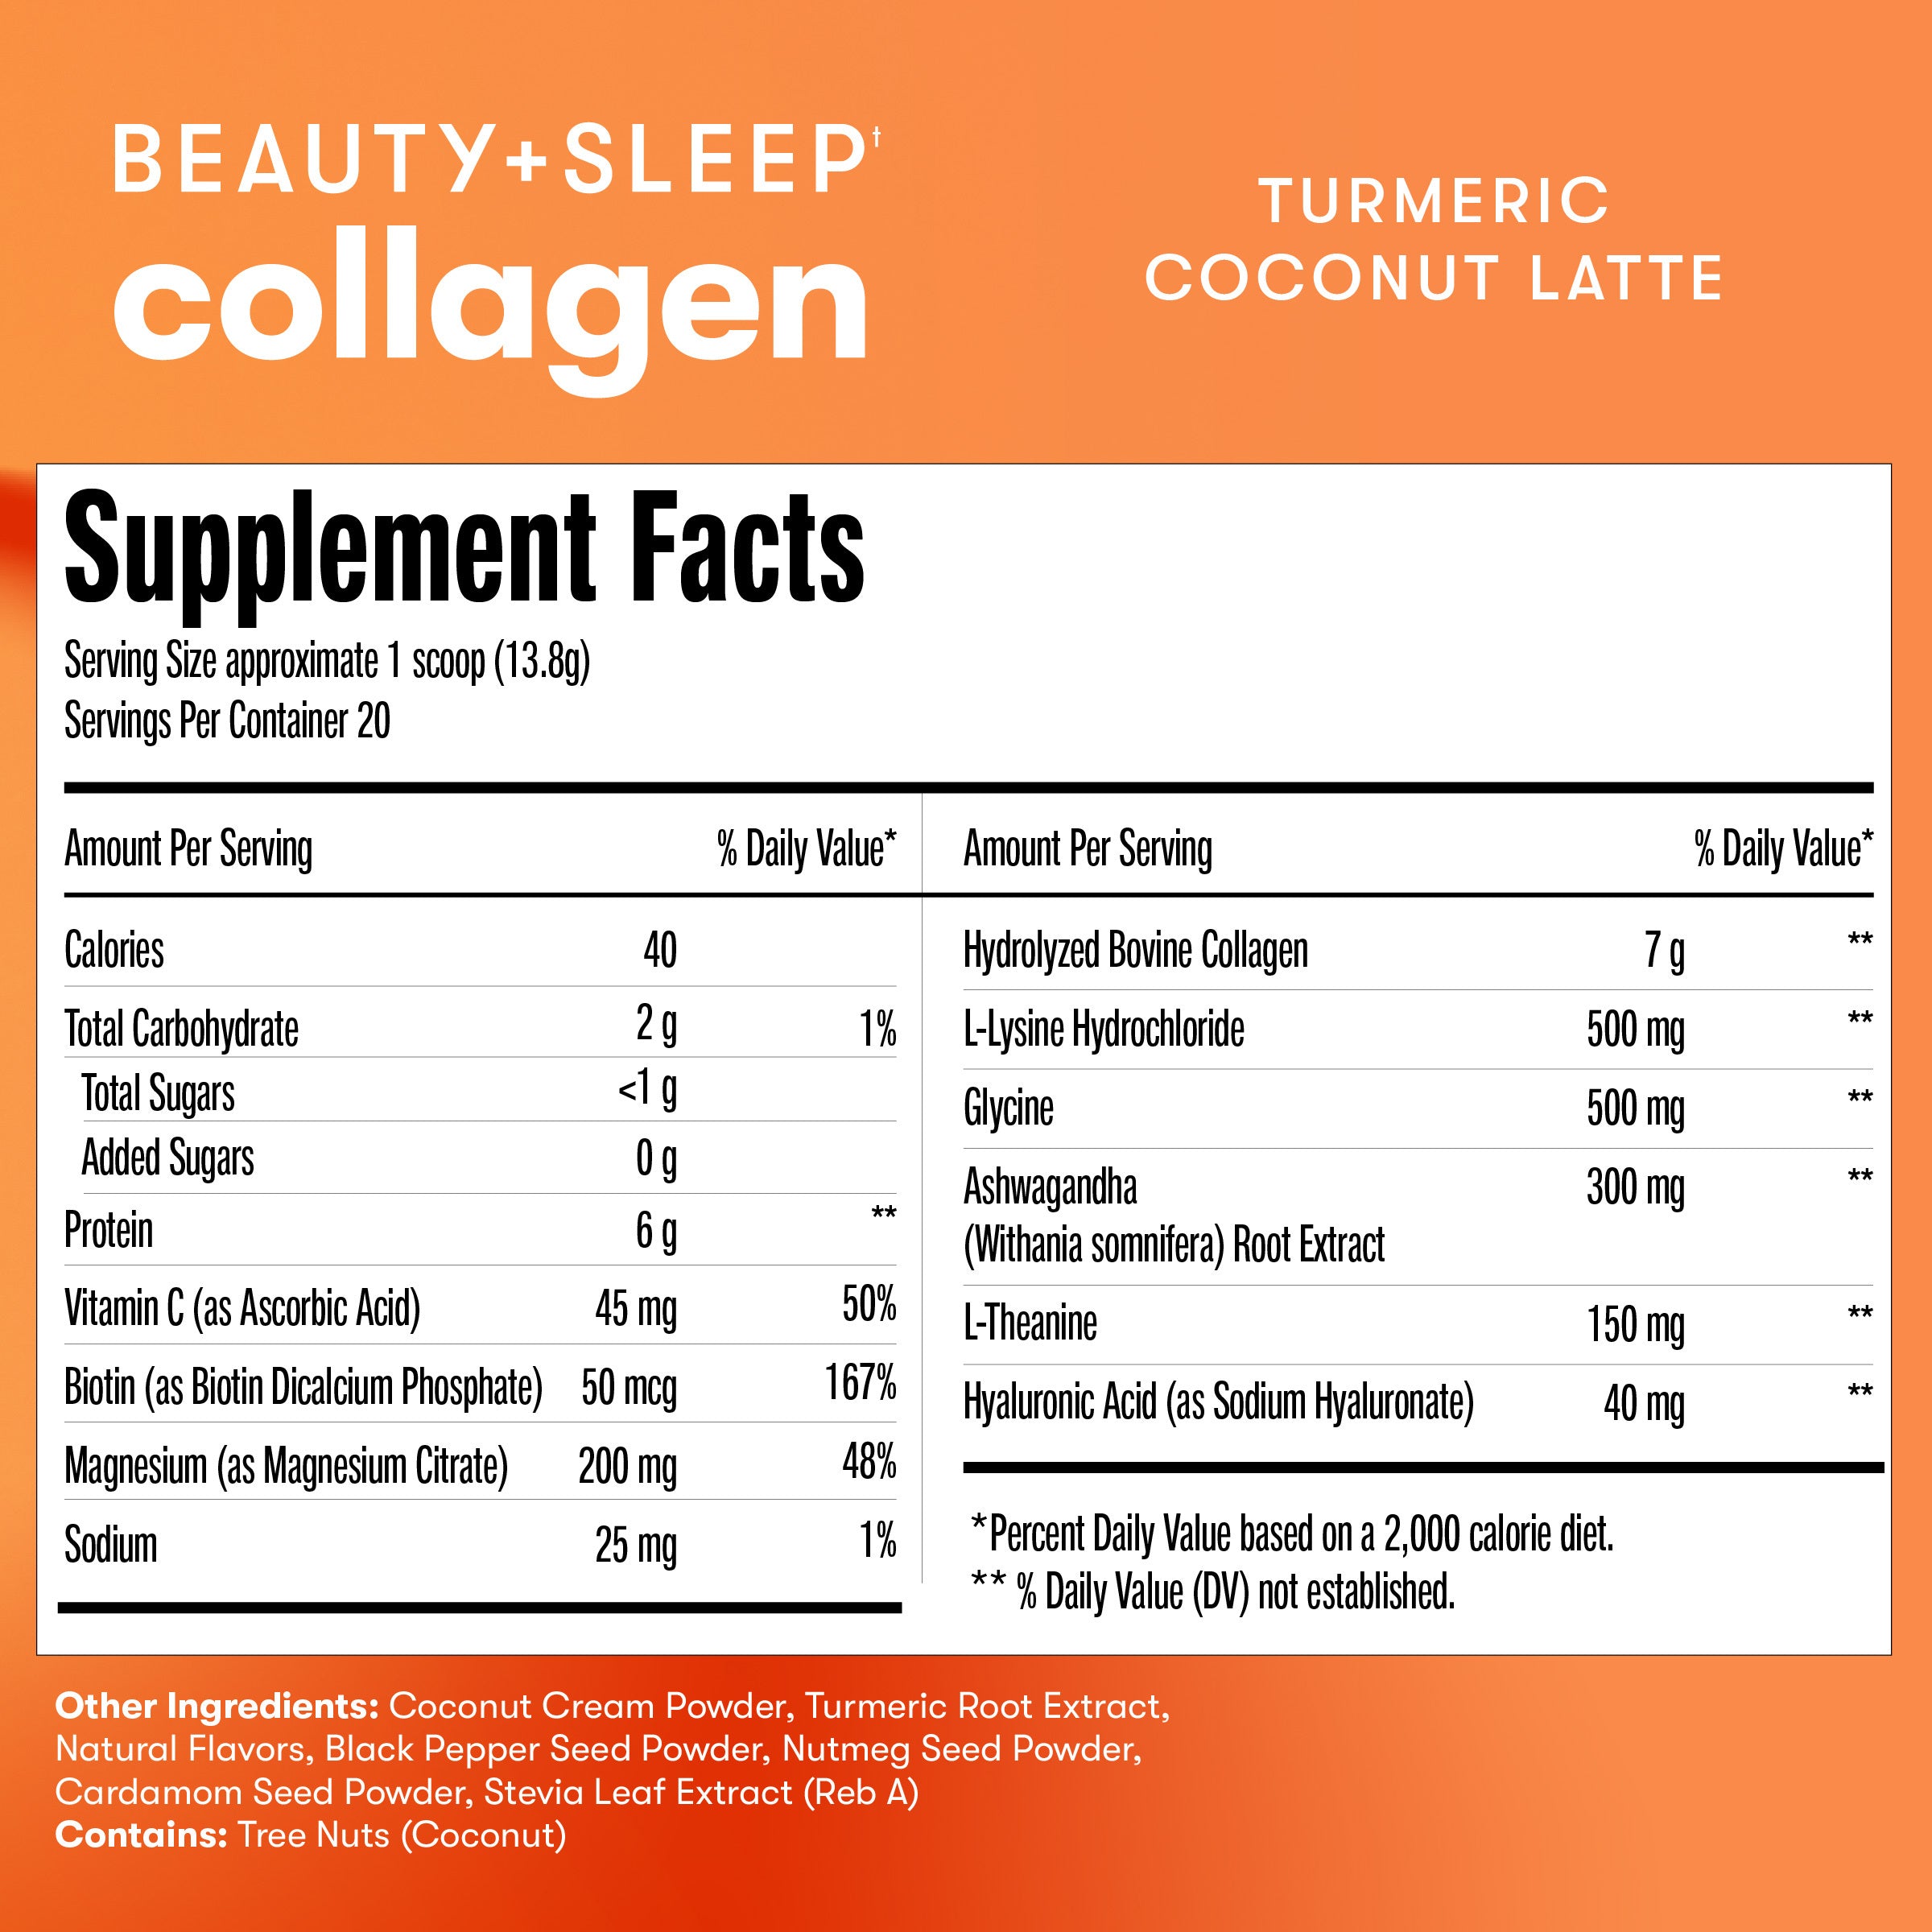 Beauty + Sleep Collagen